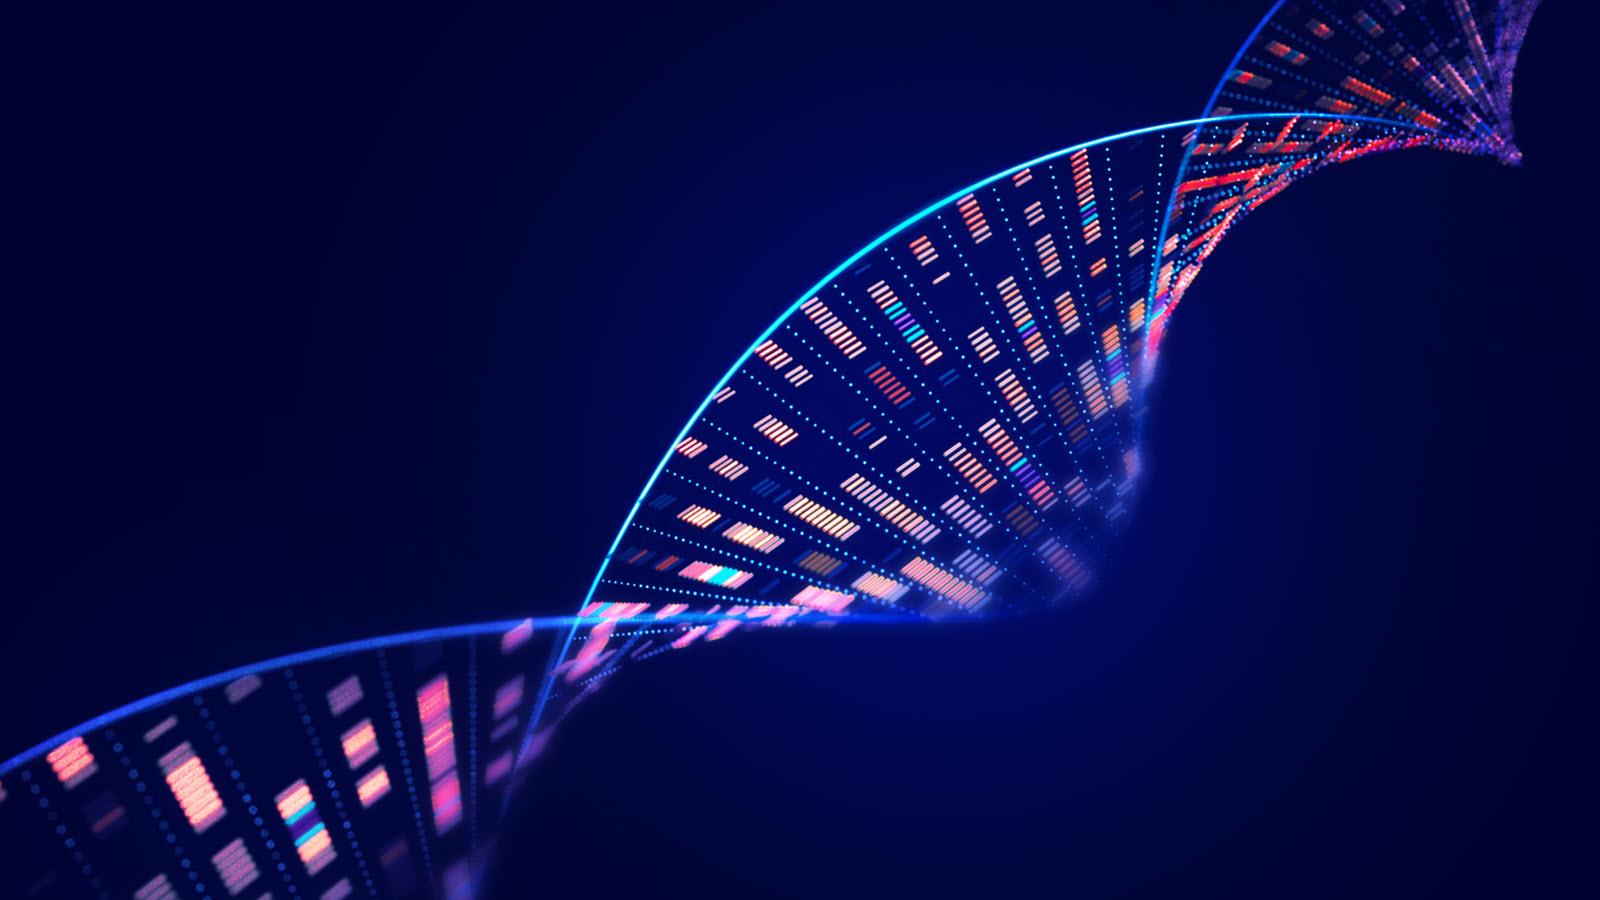 DNA illustration showing genes